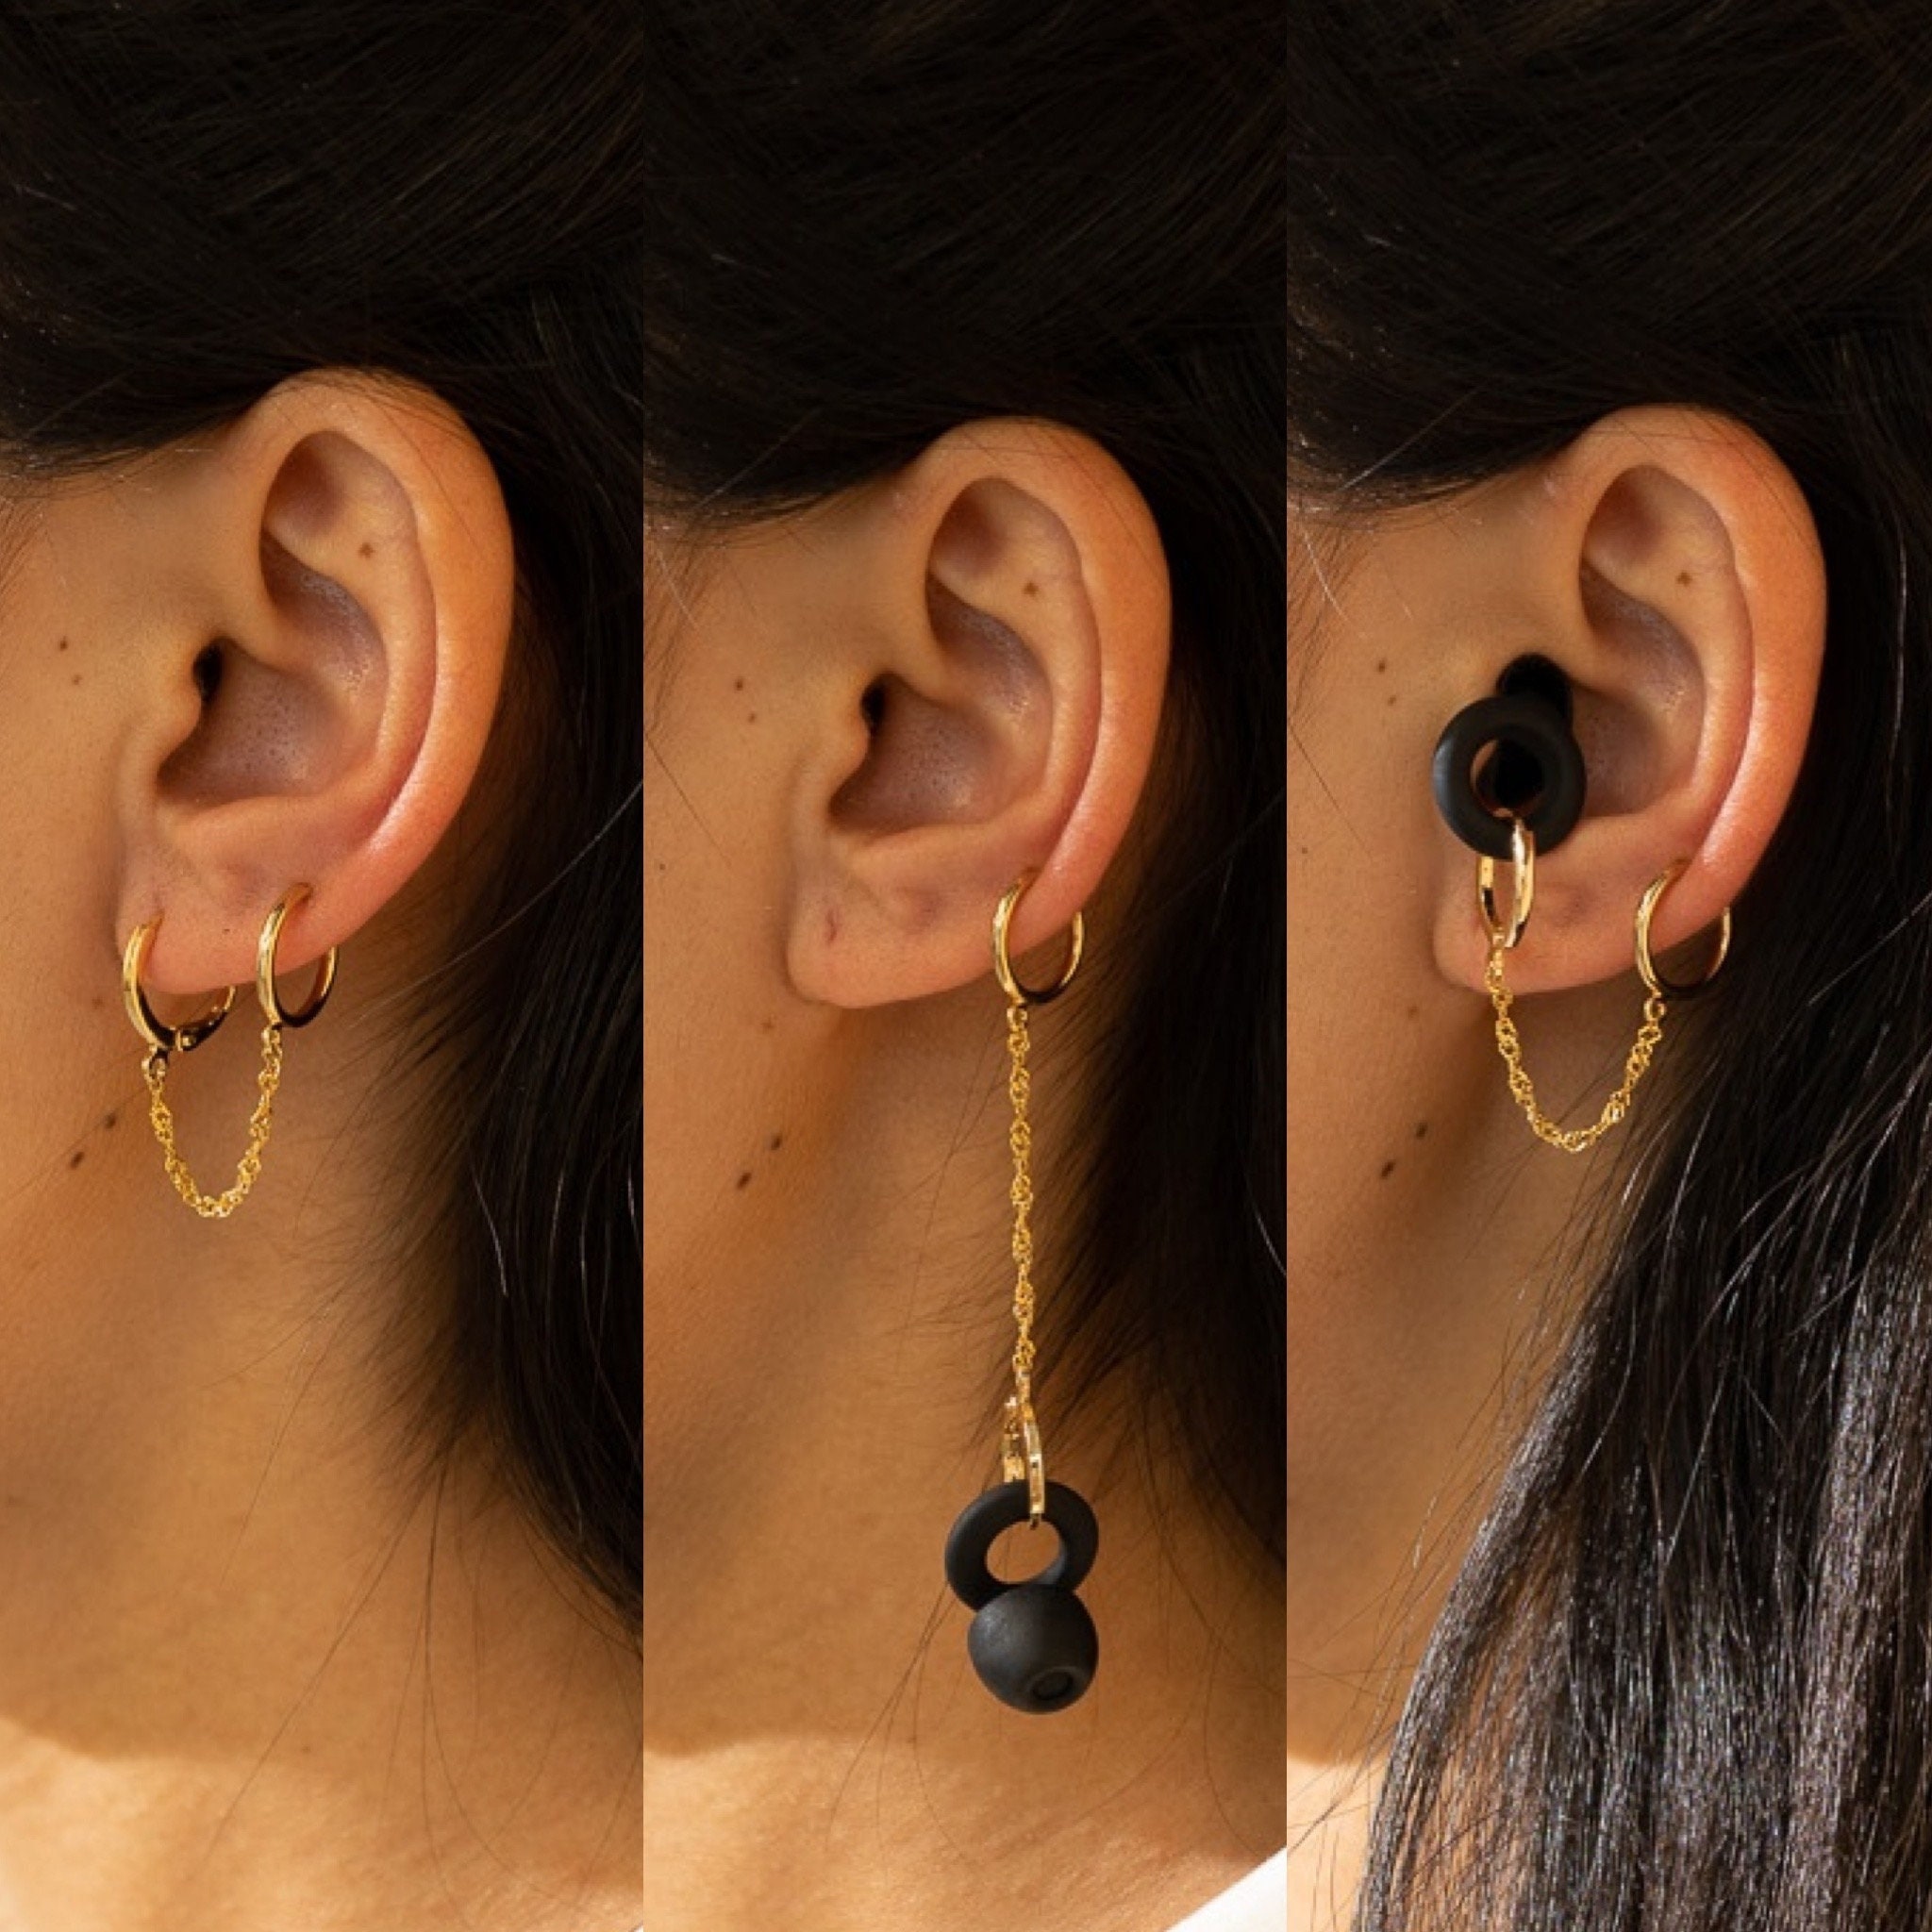 Earring Holder, 8 X 10 White Earring Display, Wire Mesh Earring Hanger,  Trendy Earring Holder, Easy Wall Earring Holders, Earring Display 